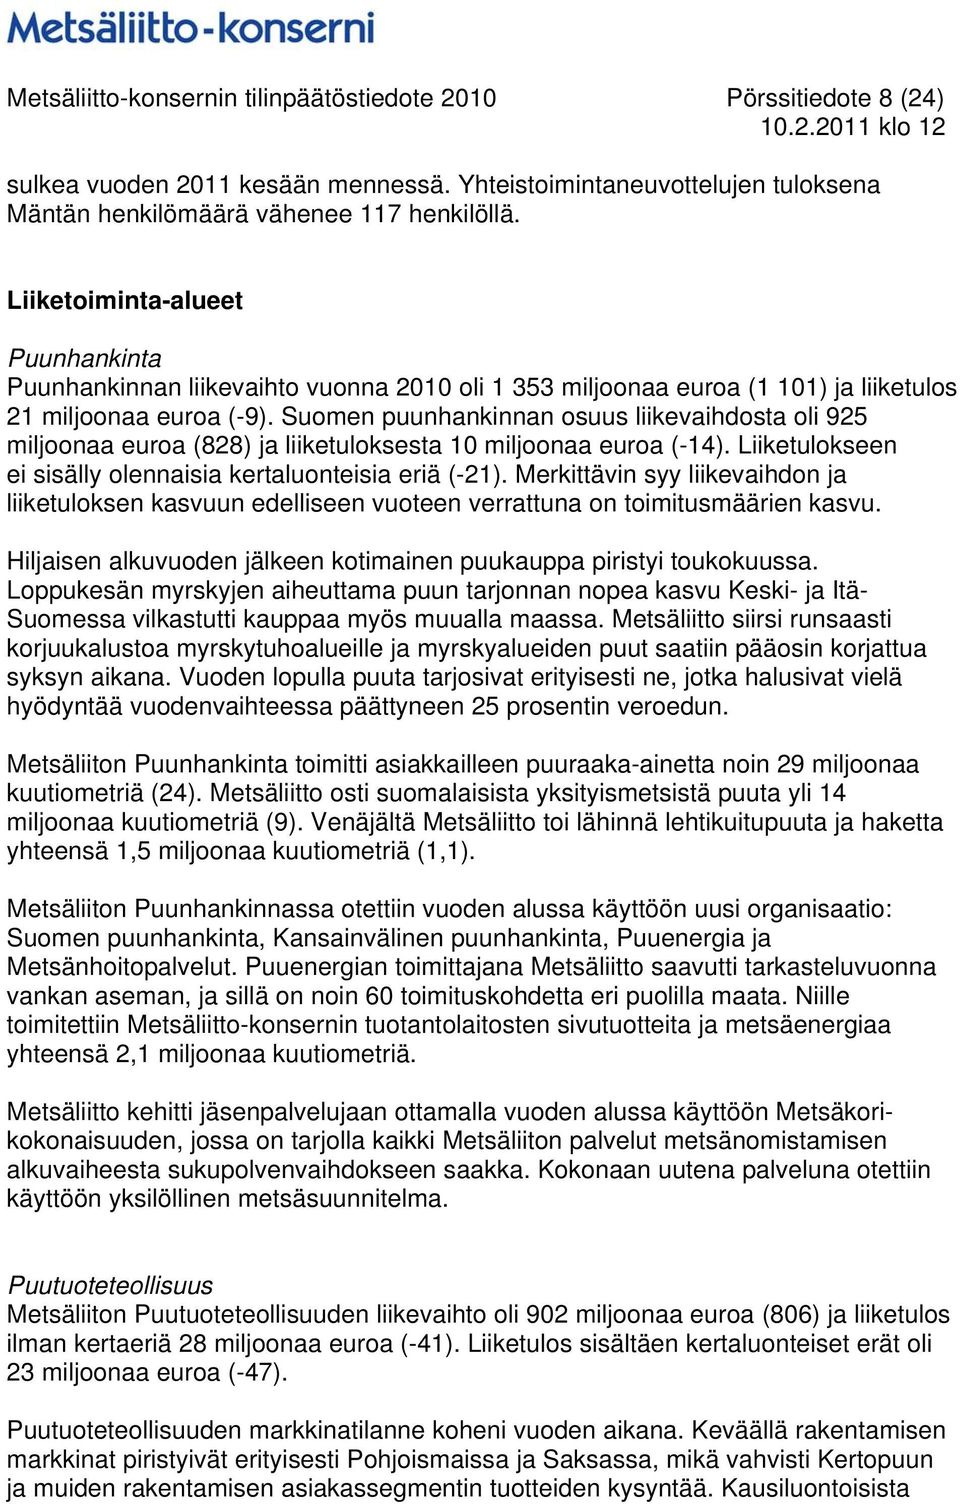 Suomen puunhankinnan osuus liikevaihdosta oli 925 miljoonaa euroa (828) ja liiketuloksesta 10 miljoonaa euroa (-14). Liiketulokseen ei sisälly olennaisia kertaluonteisia eriä (-21).